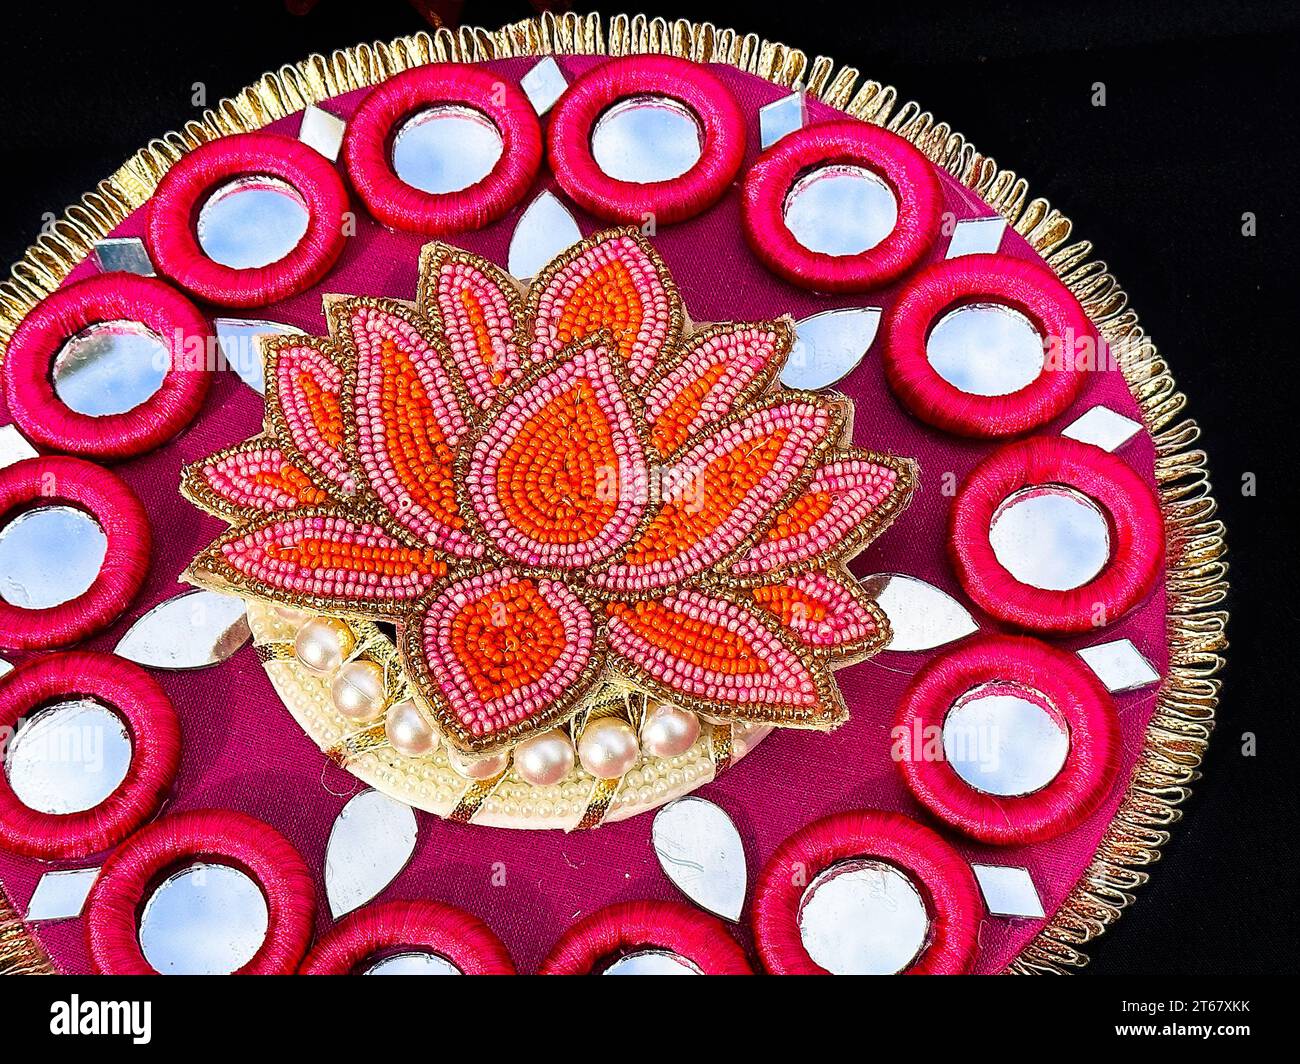 Objet souvenir indien vendu comme marchandise pendant le Festival de Diwali. L'événement annuel traditionnel est célébré à Nathan Phillips Square Banque D'Images